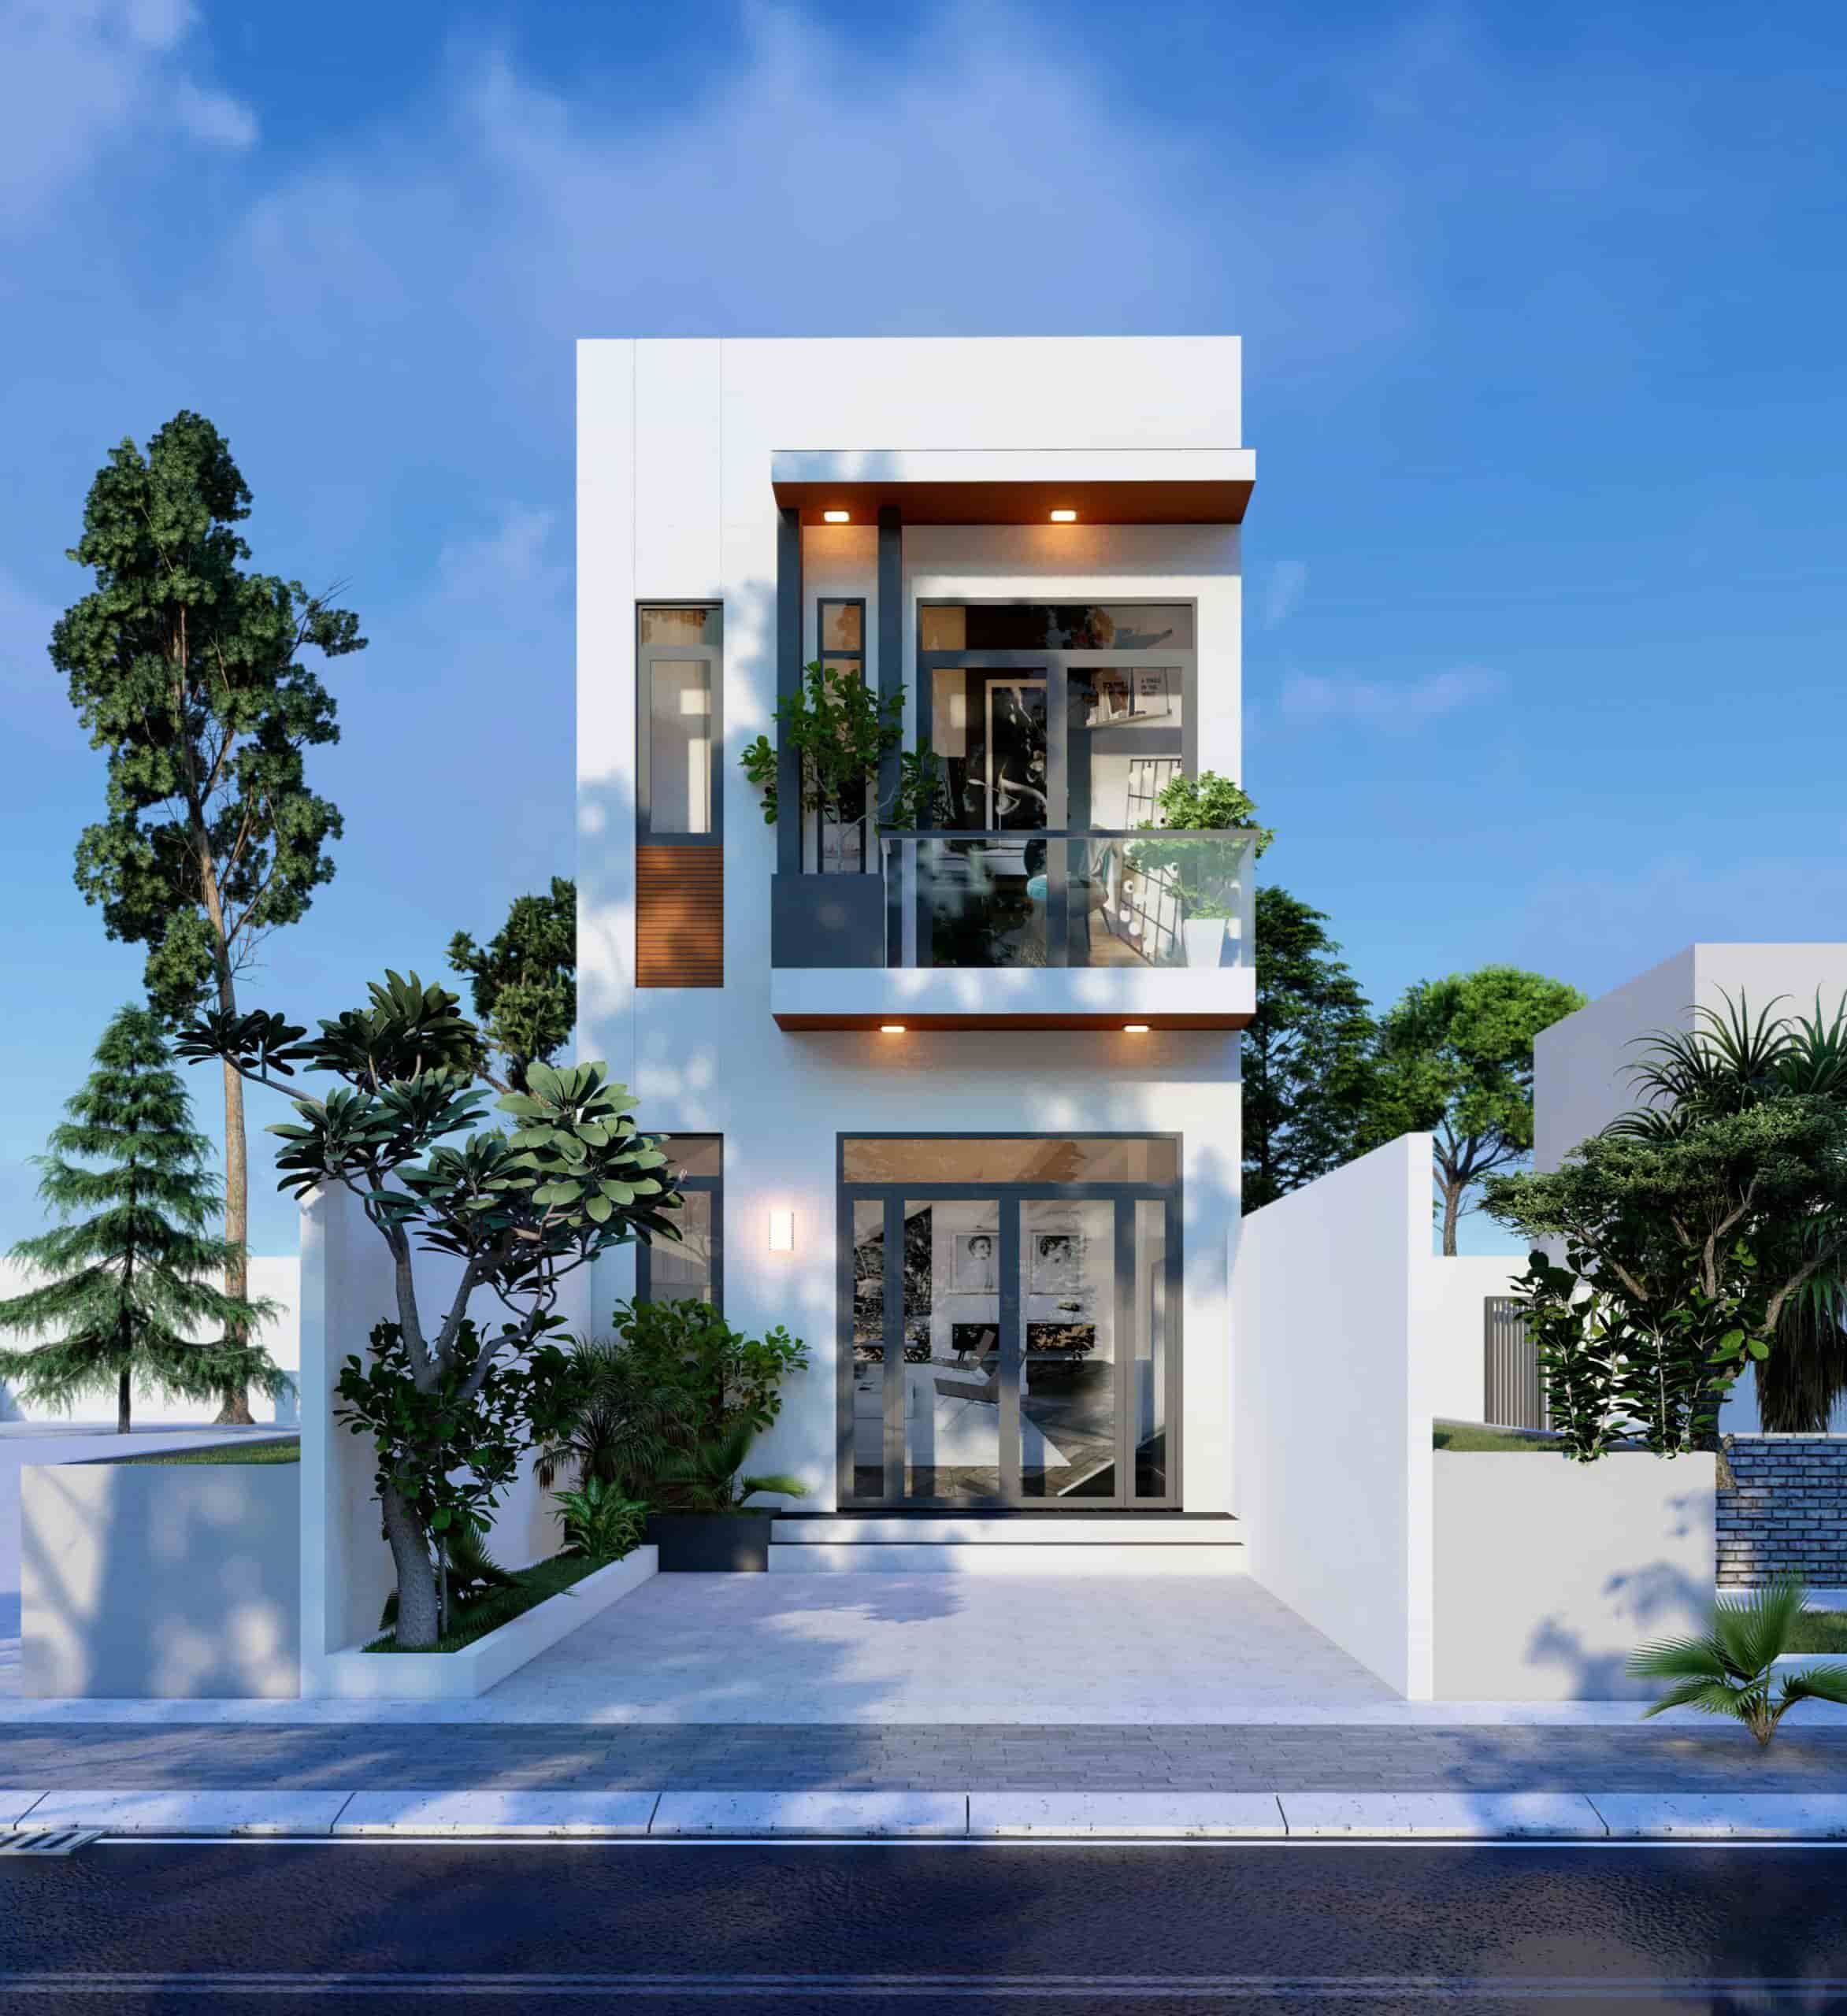 250+ Mẫu nhà phố 2 tầng đẹp, tiết kiệm chi phí thi công - VillaDesign